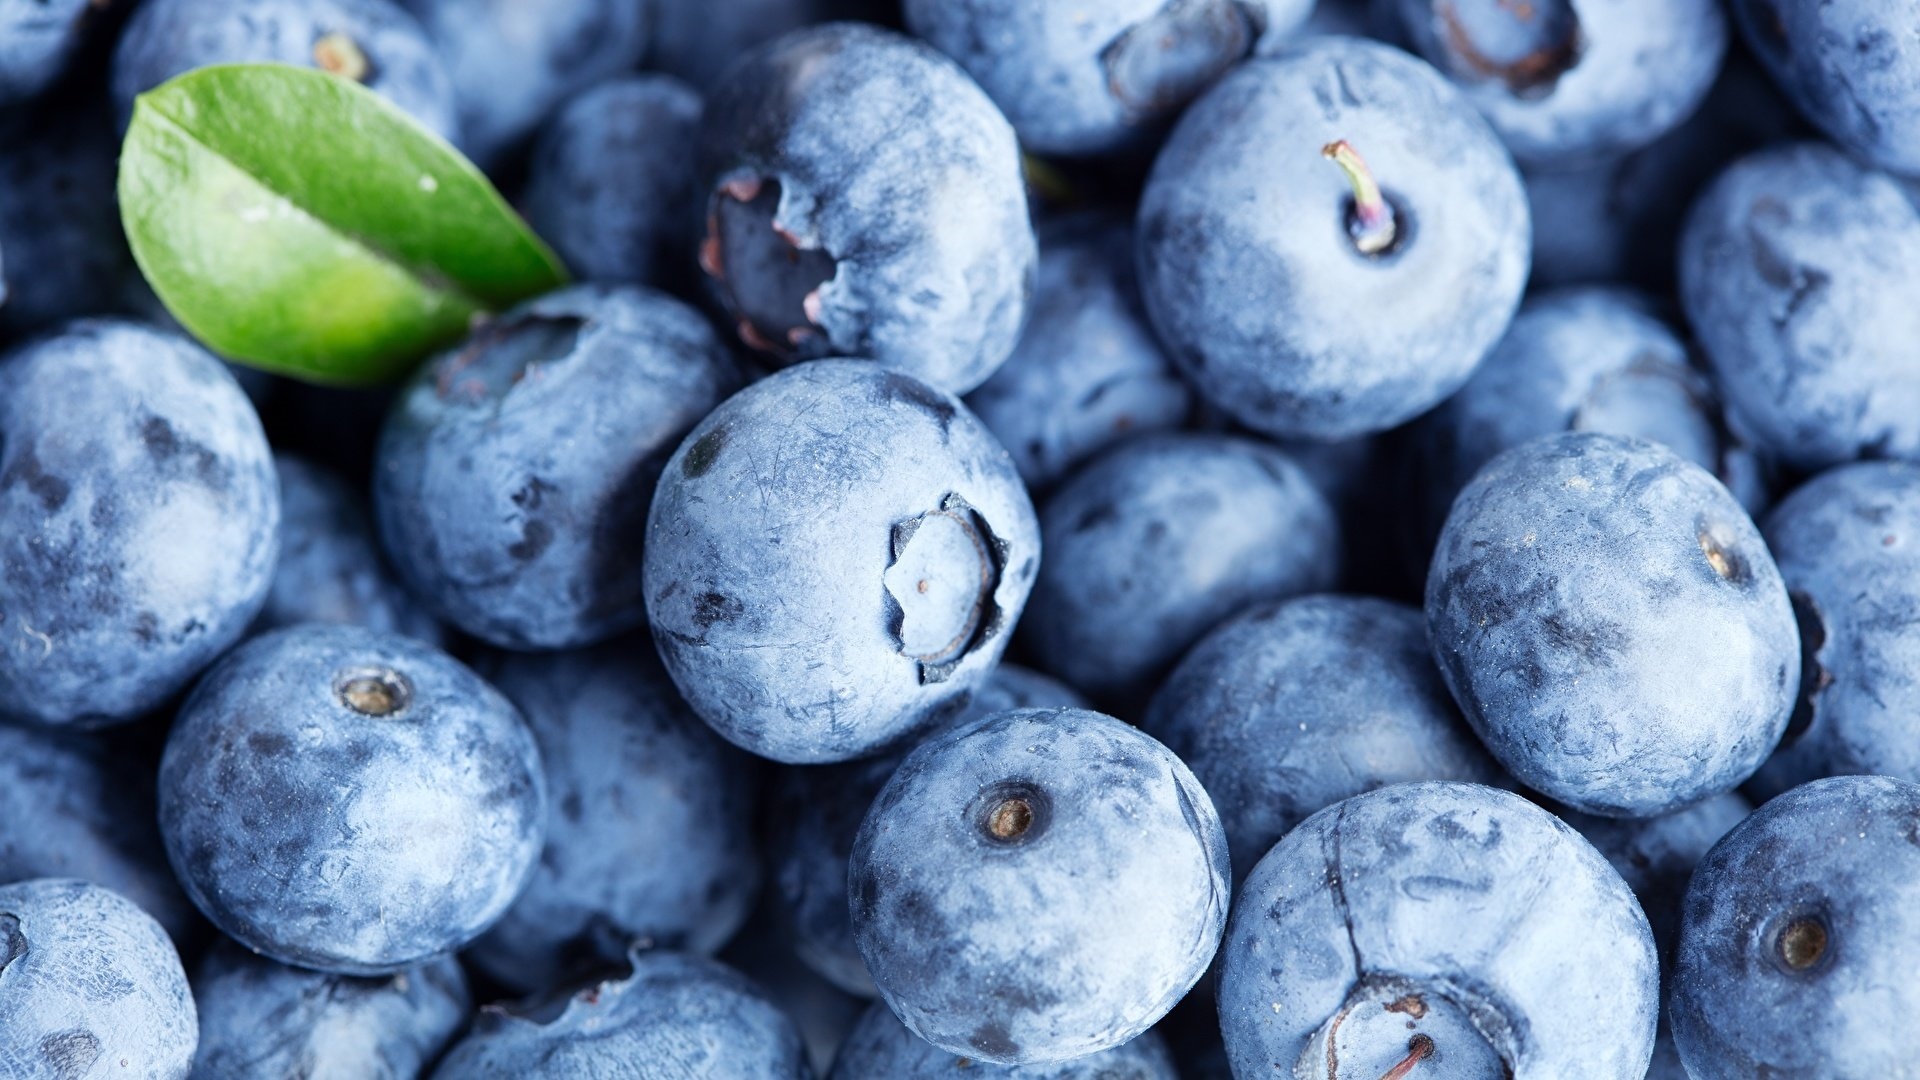 Blueberries wallpaper for desktop